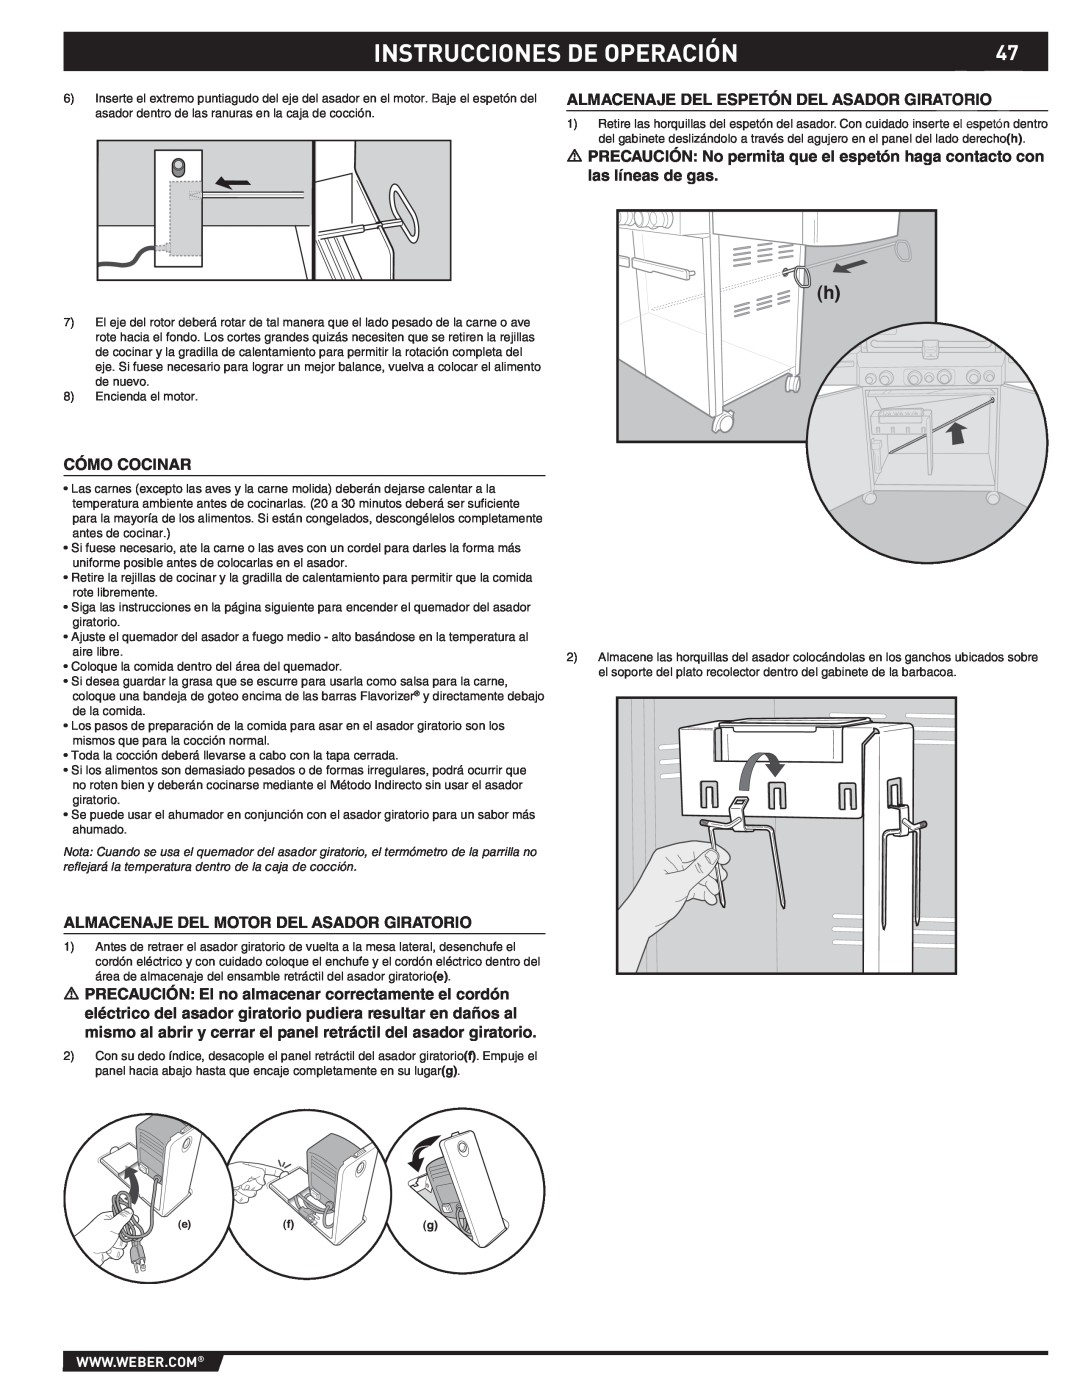 Weber S-470TM manual Instrucciones De Operación, Almacenaje Del Espetón Del Asador Giratorio, Cómo Cocinar 